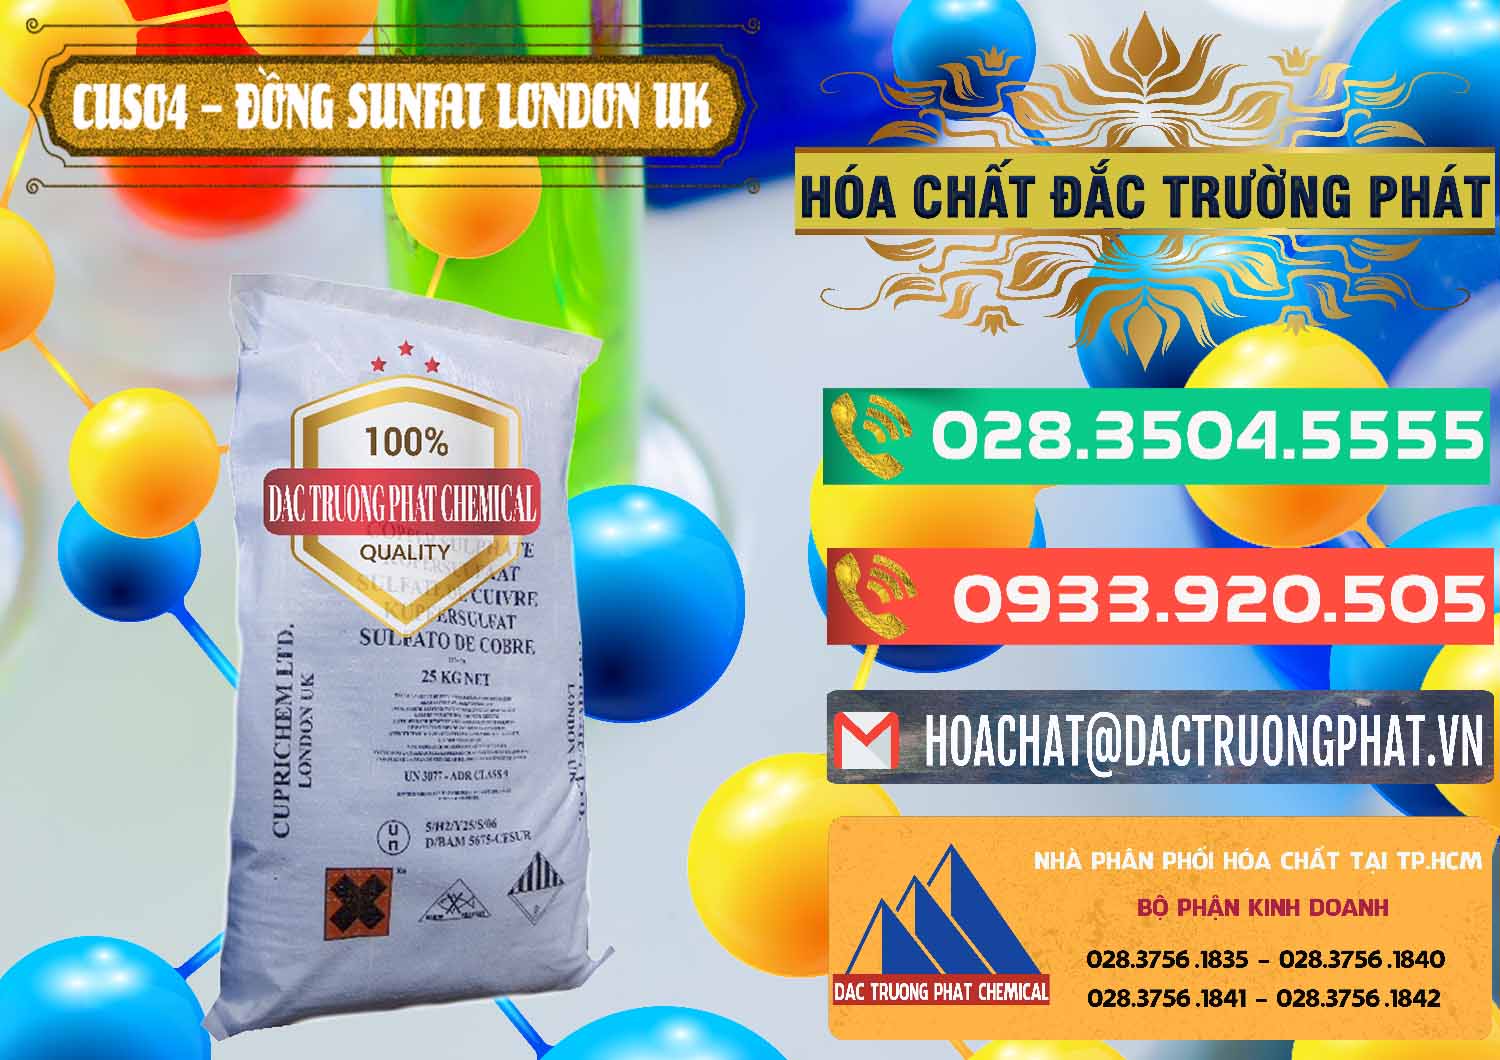 Công ty chuyên phân phối _ bán CuSO4 – Đồng Sunfat Anh Uk Kingdoms - 0478 - Cty chuyên phân phối ( cung ứng ) hóa chất tại TP.HCM - congtyhoachat.com.vn